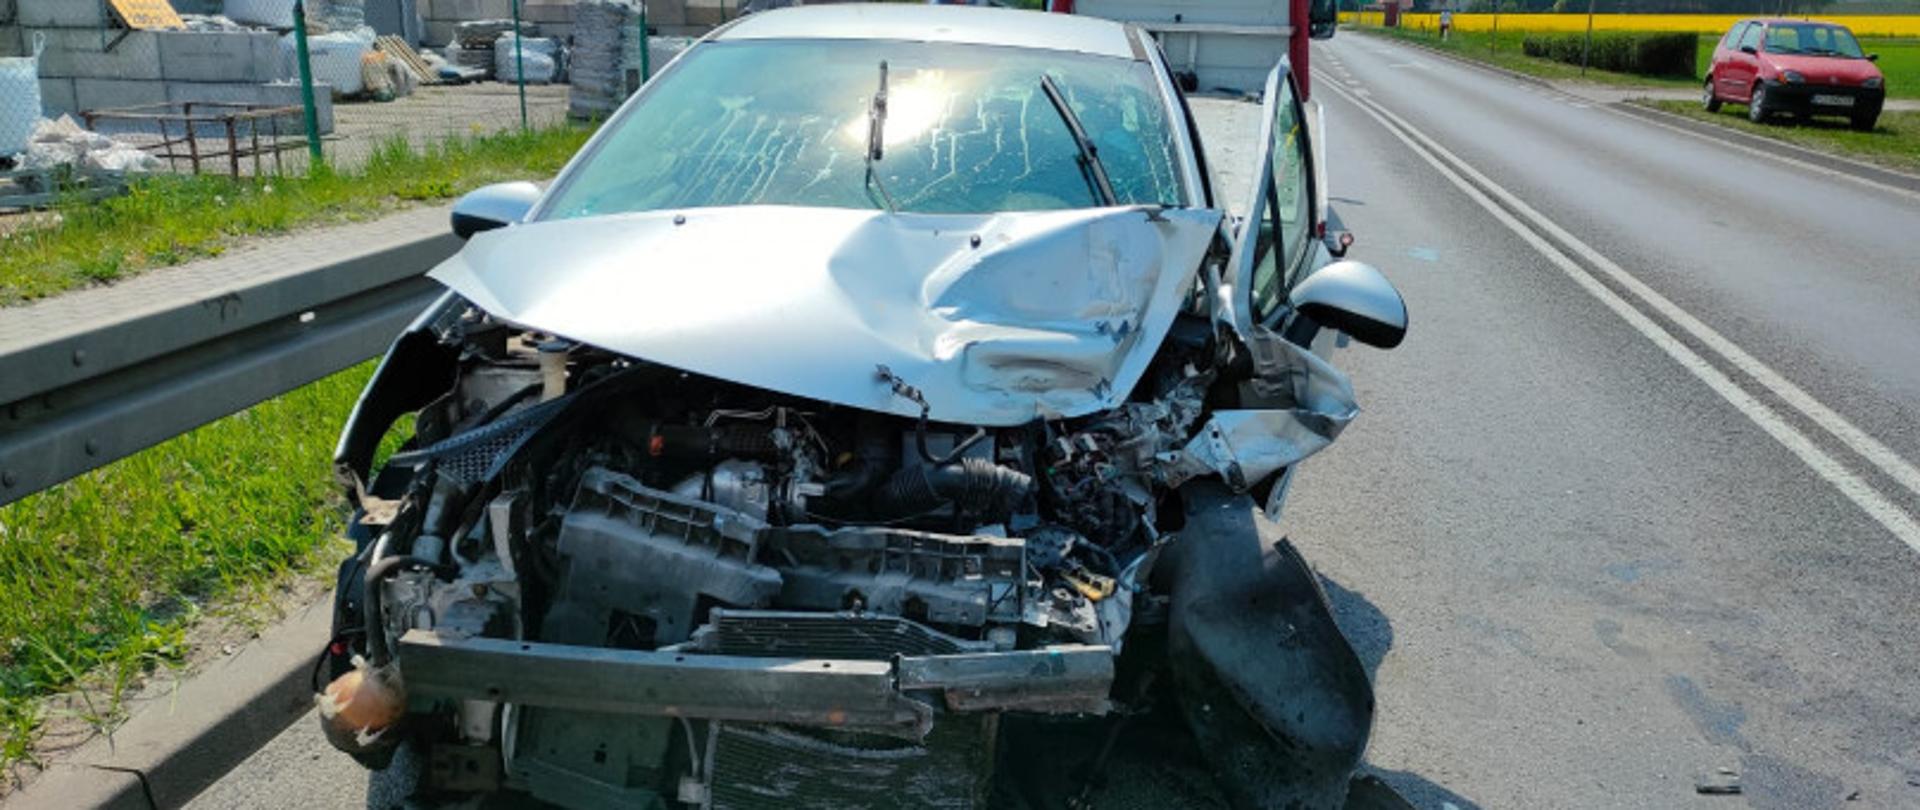 Zdjęcie przedstawia samochód osobowy po wypadku ze zniszczonym przodem